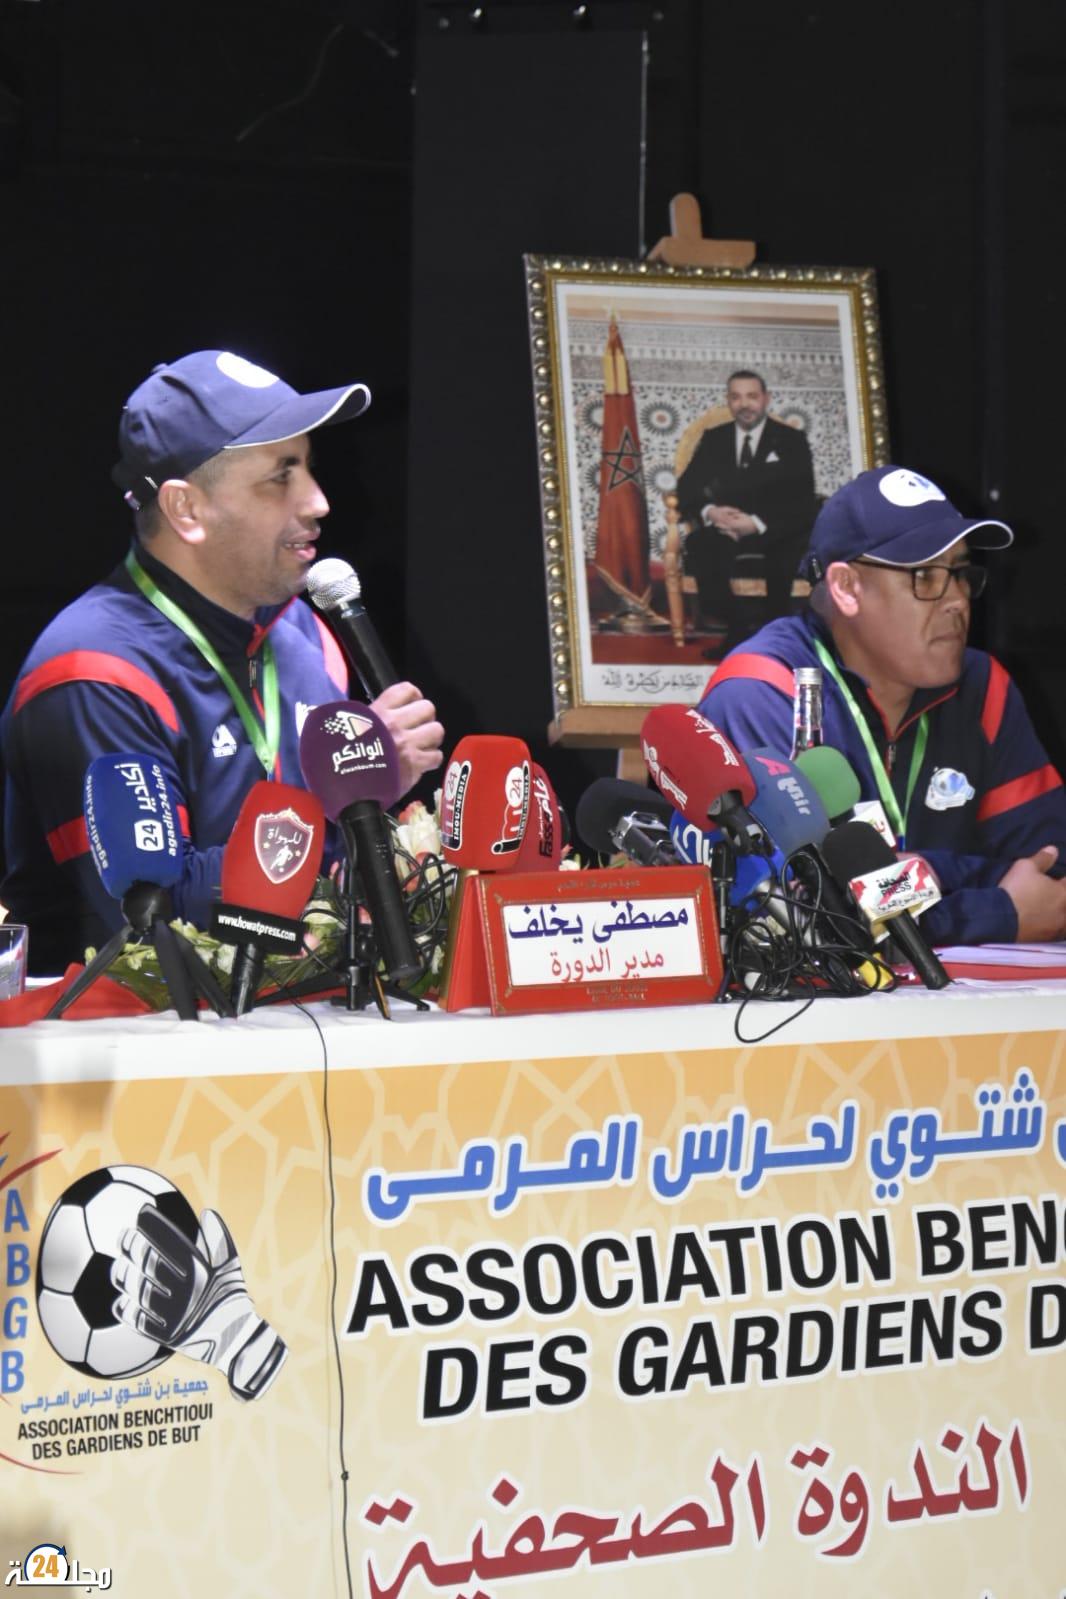 جمعية بن شتوي لحراس المرمى تعقد ندوة صحفية لتسلط الضوء عن الدورة الثانية من الدوري الدولي لكرة القدم